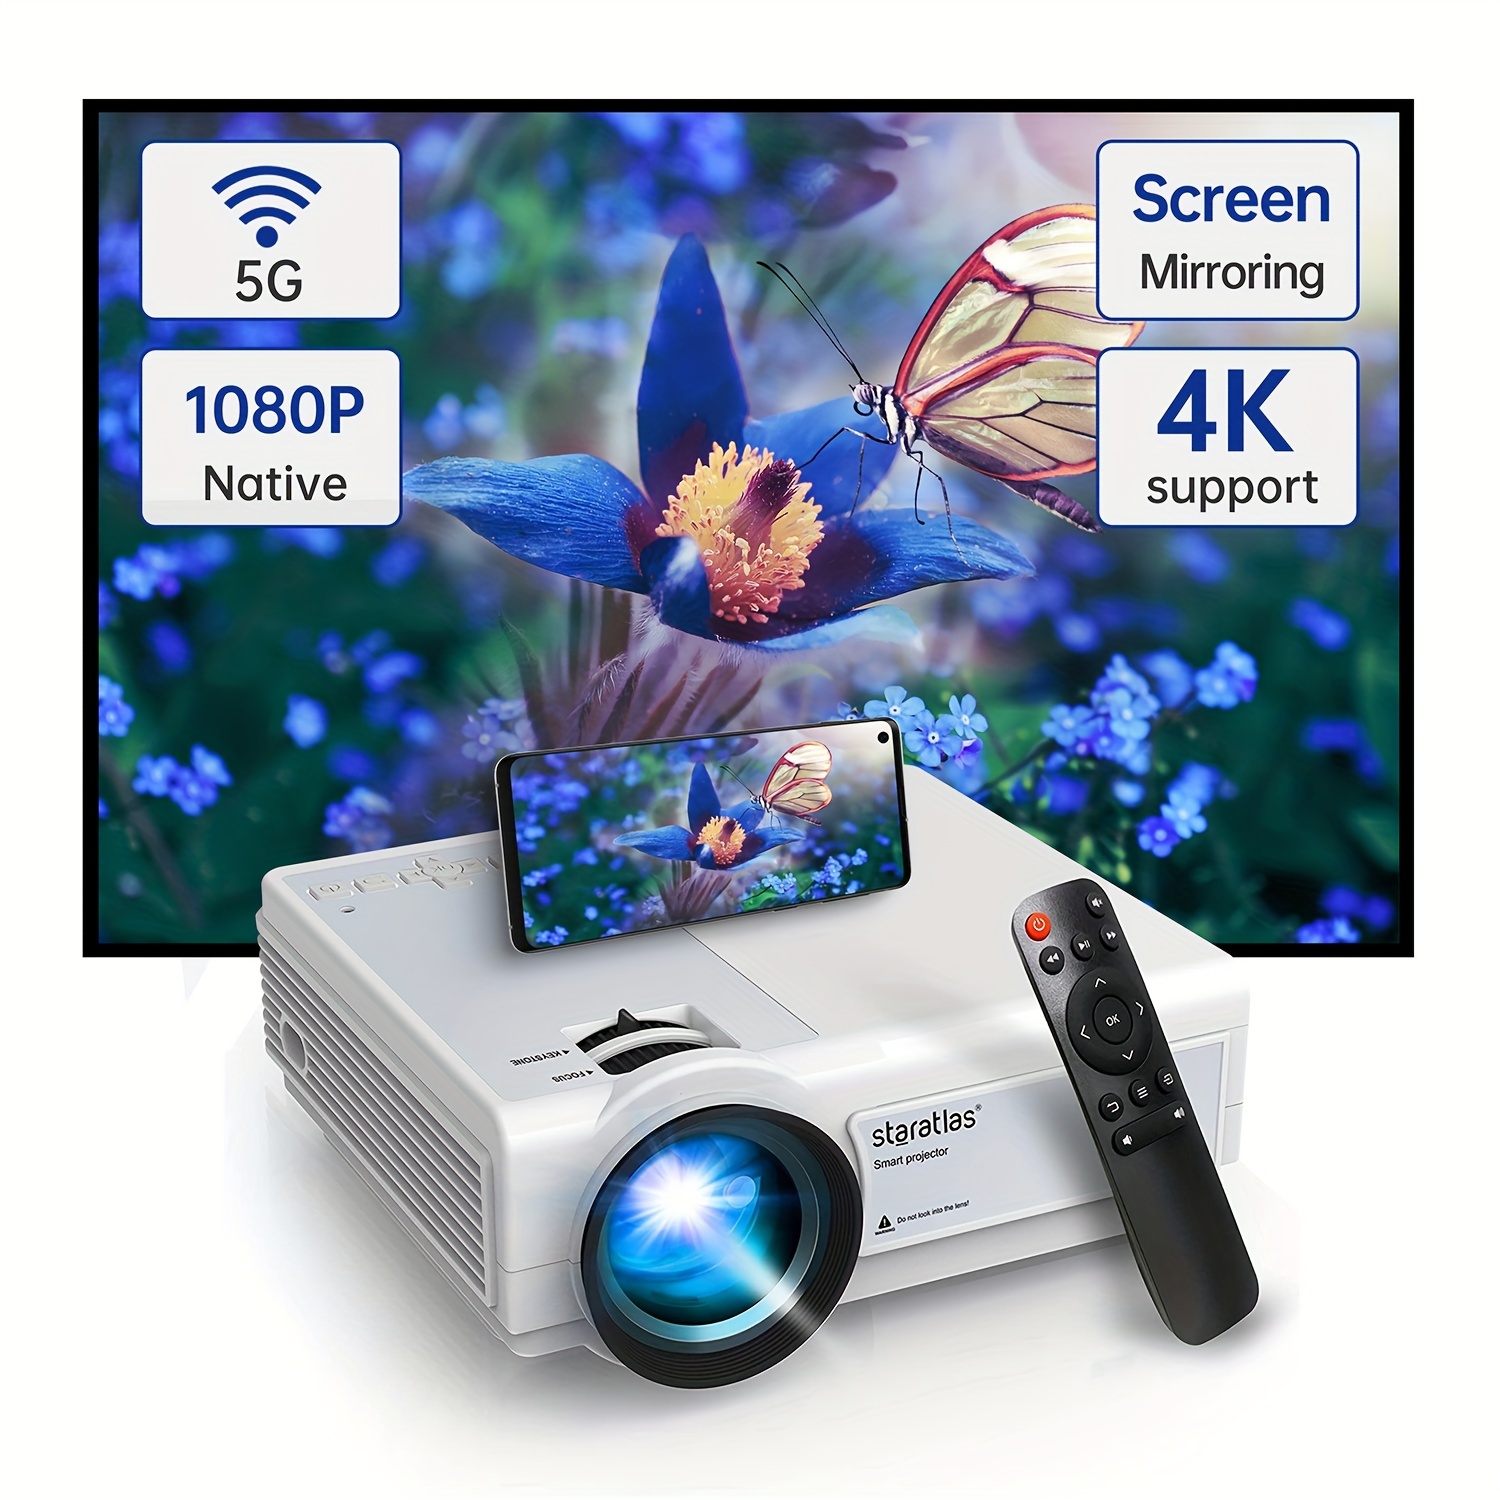 Projecteur, Mini Projecteur 5G WiFi, Videoprojecteur Full HD 1080P